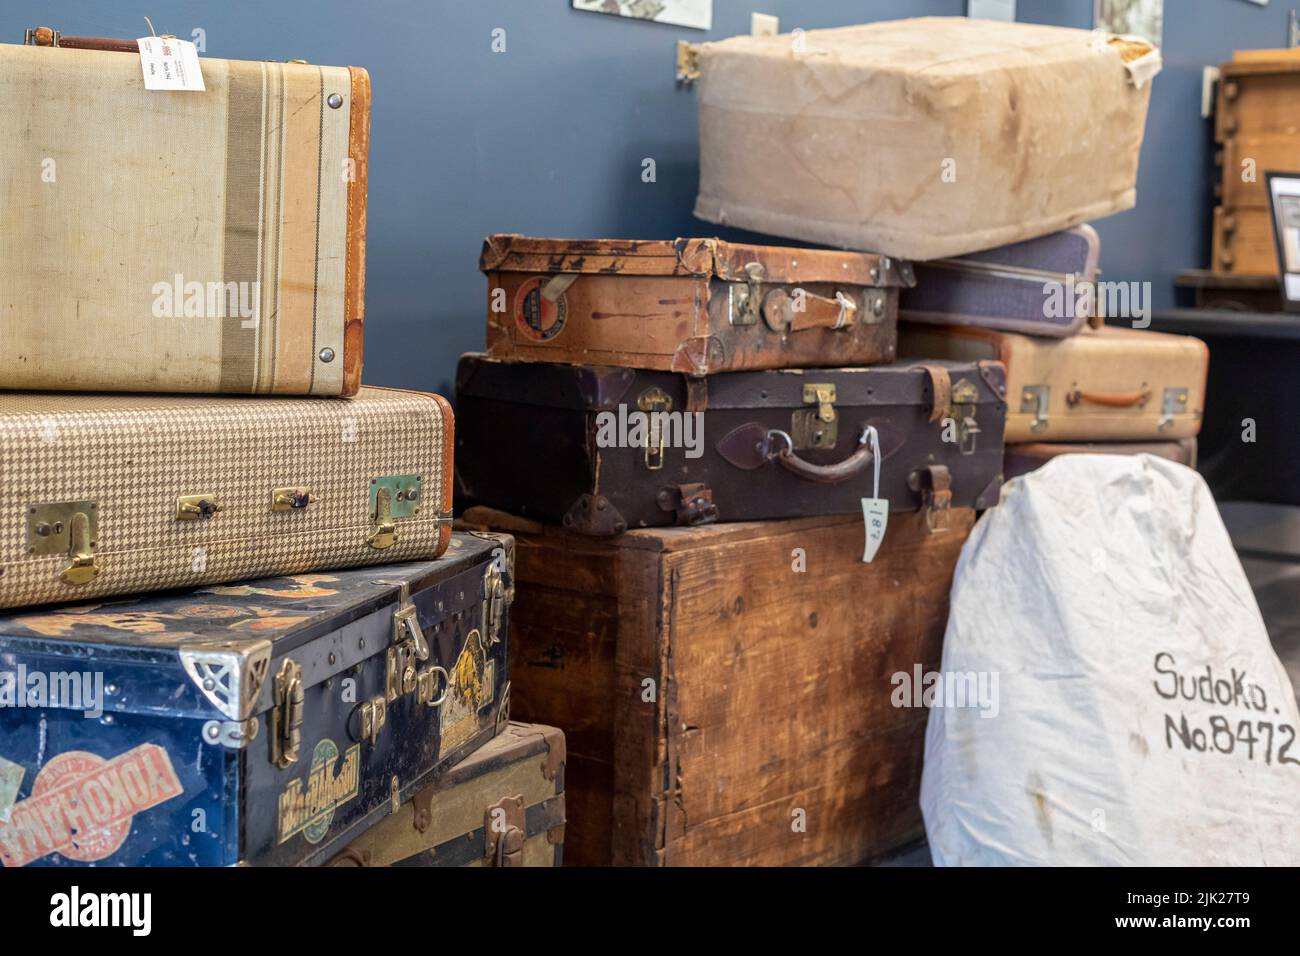 Granada, Colorado - das Amaché Museum in der Nähe des Weltkrieges 2 das japanische Internierungslager Amache zeigt Koffer, die Internierte mitgebracht haben, als sie ev Stockfoto